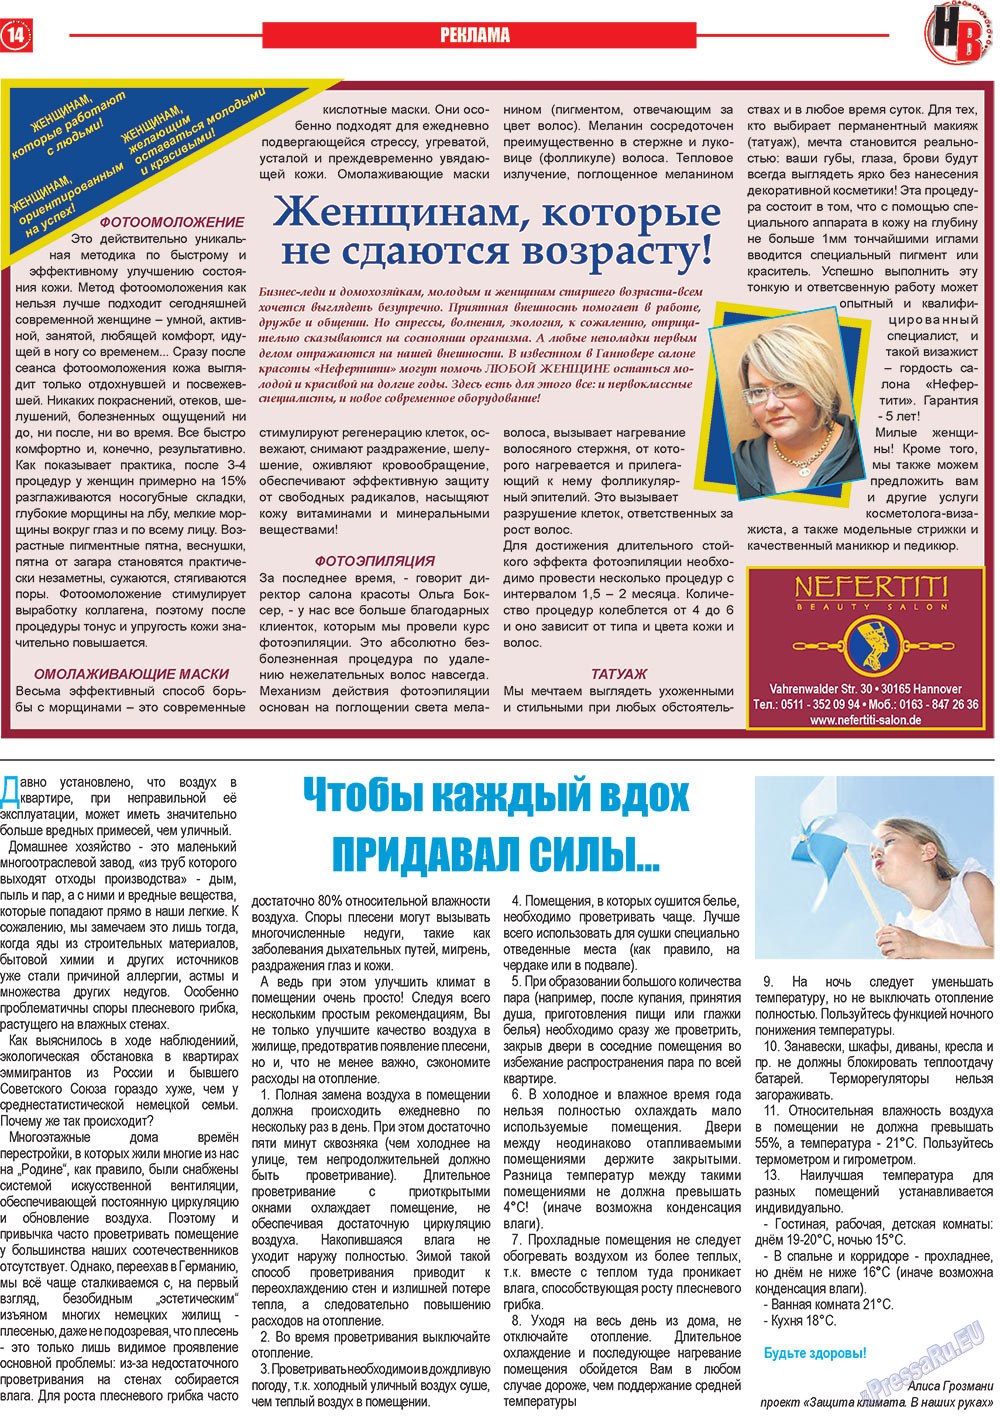 Наше время, газета. 2013 №2 стр.14